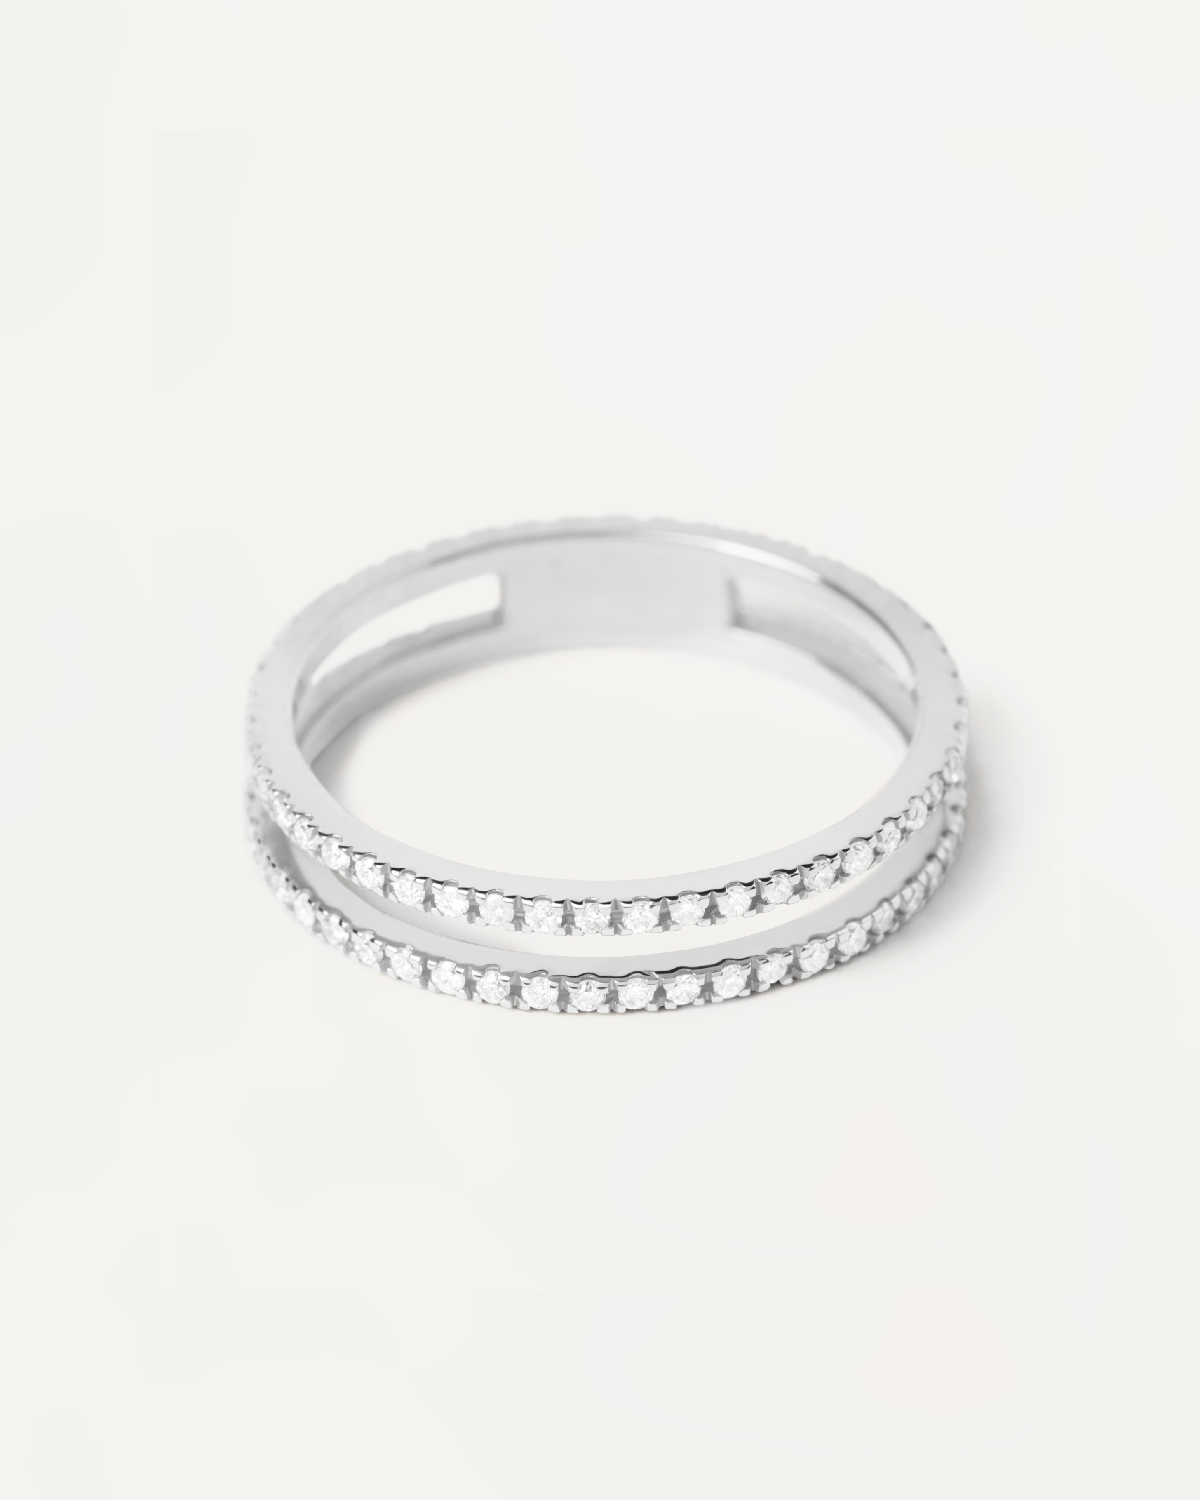 Eternity Dual Ring aus Weissgold mit Diamanten. Erhalten Sie die neuesten Produkte von PDPAOLA. Geben Sie Ihre Bestellung sicher auf und erhalten Sie diesen Bestseller.